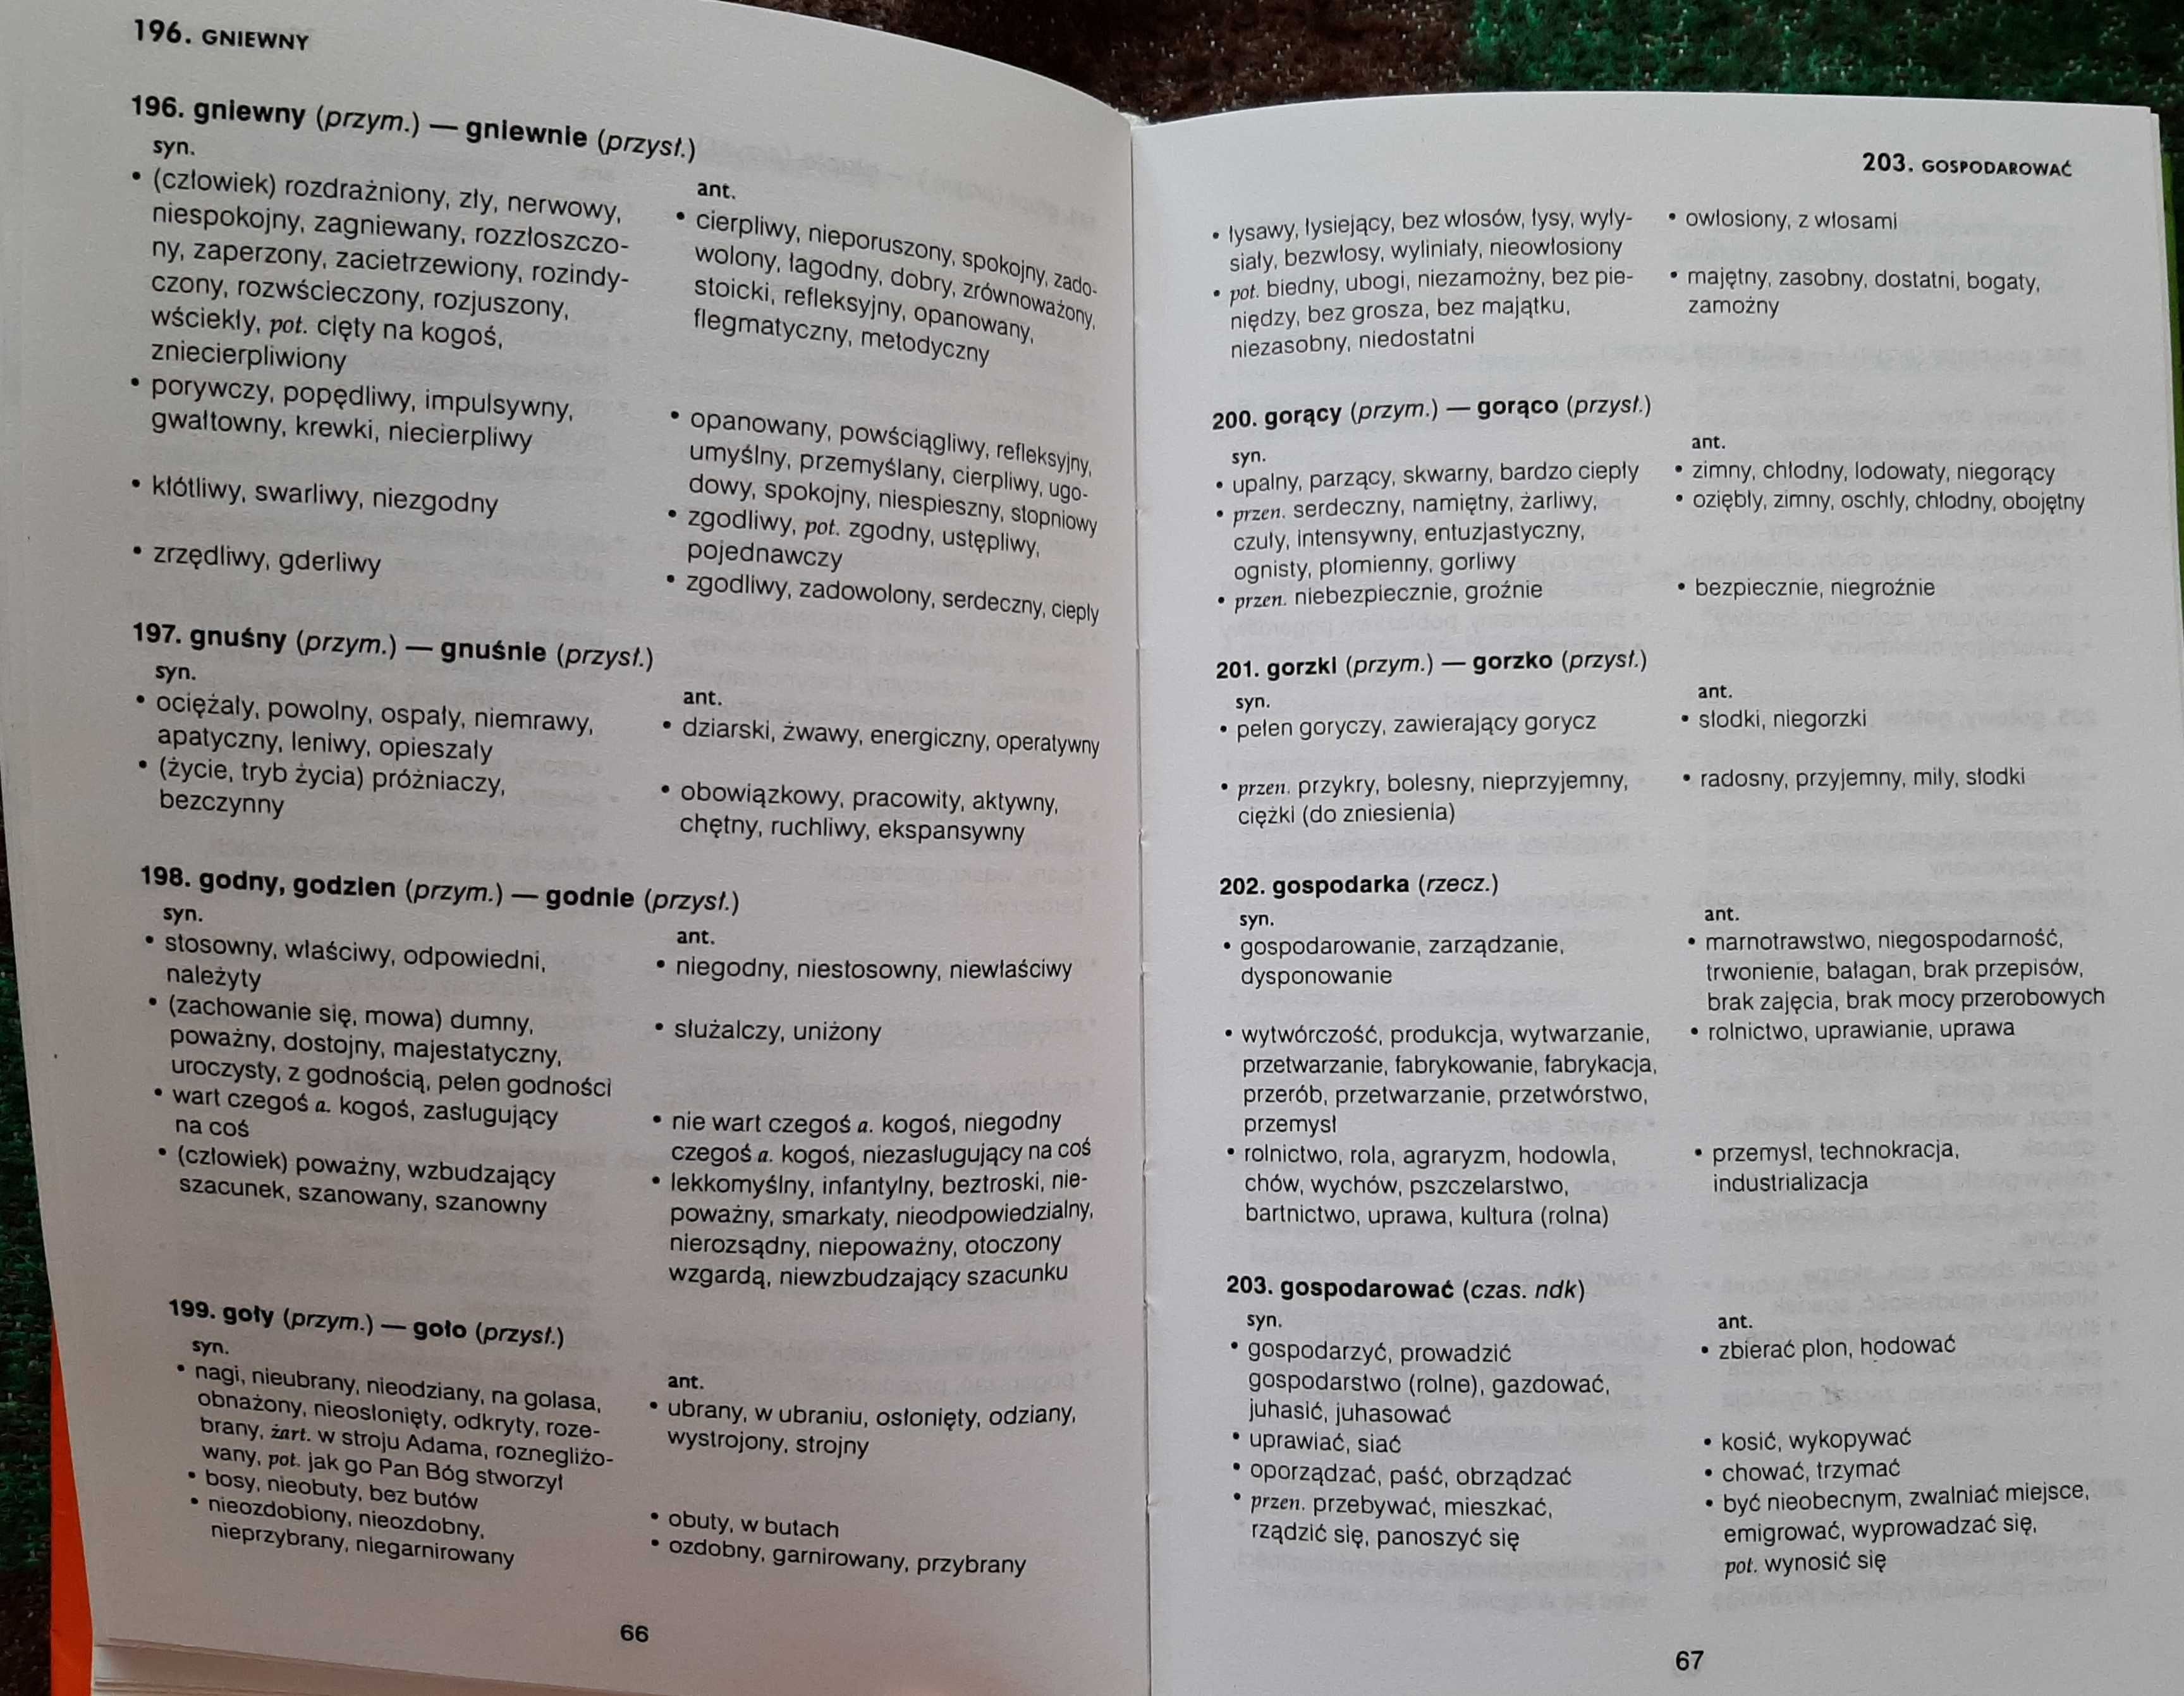 Słownik synonimów i antonimow